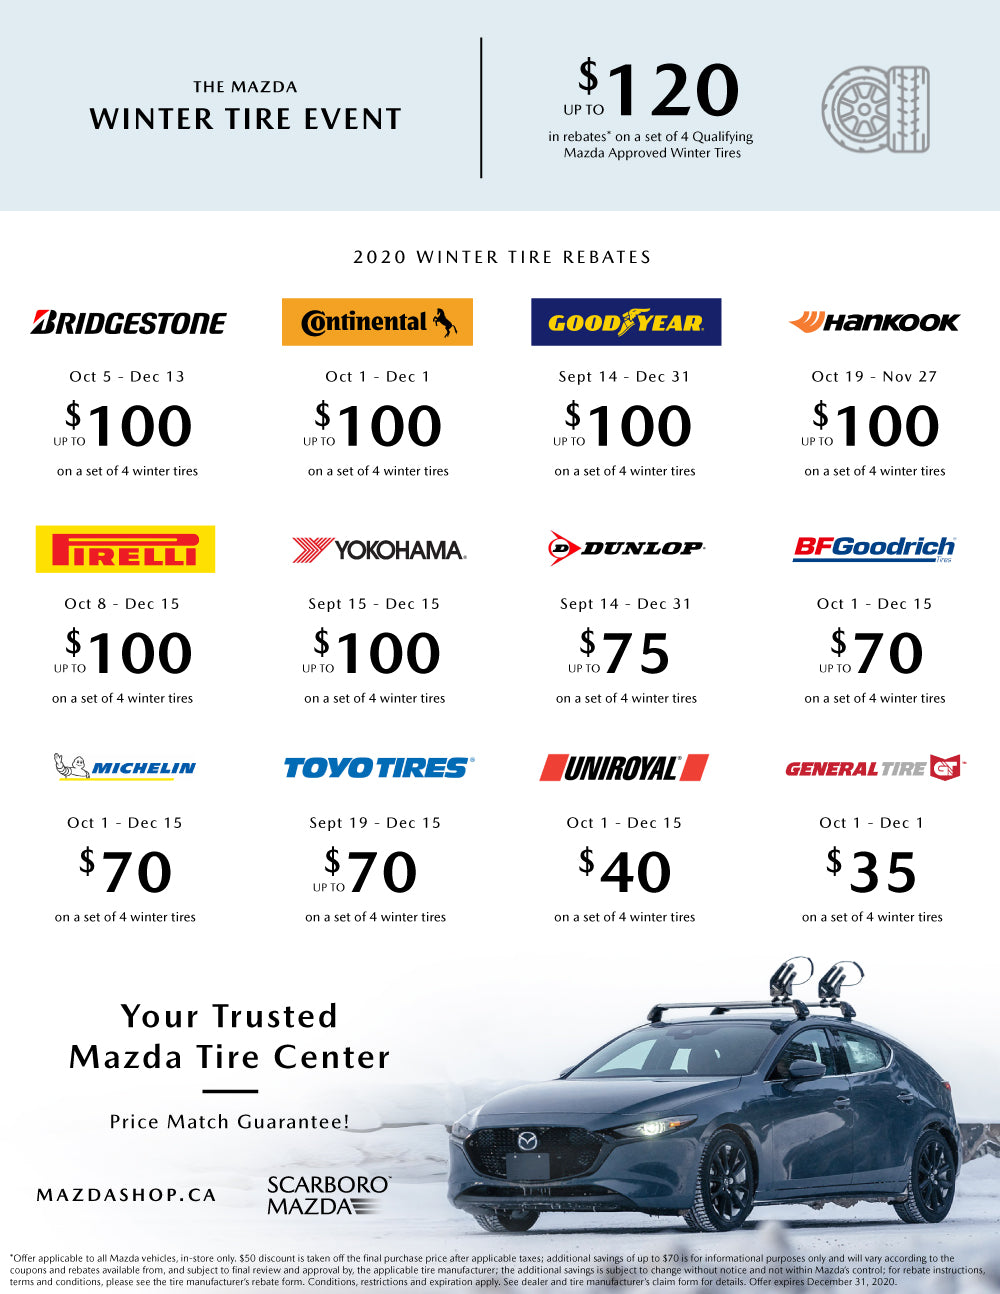 MazdaShop Winter Tire Rebates List 2020